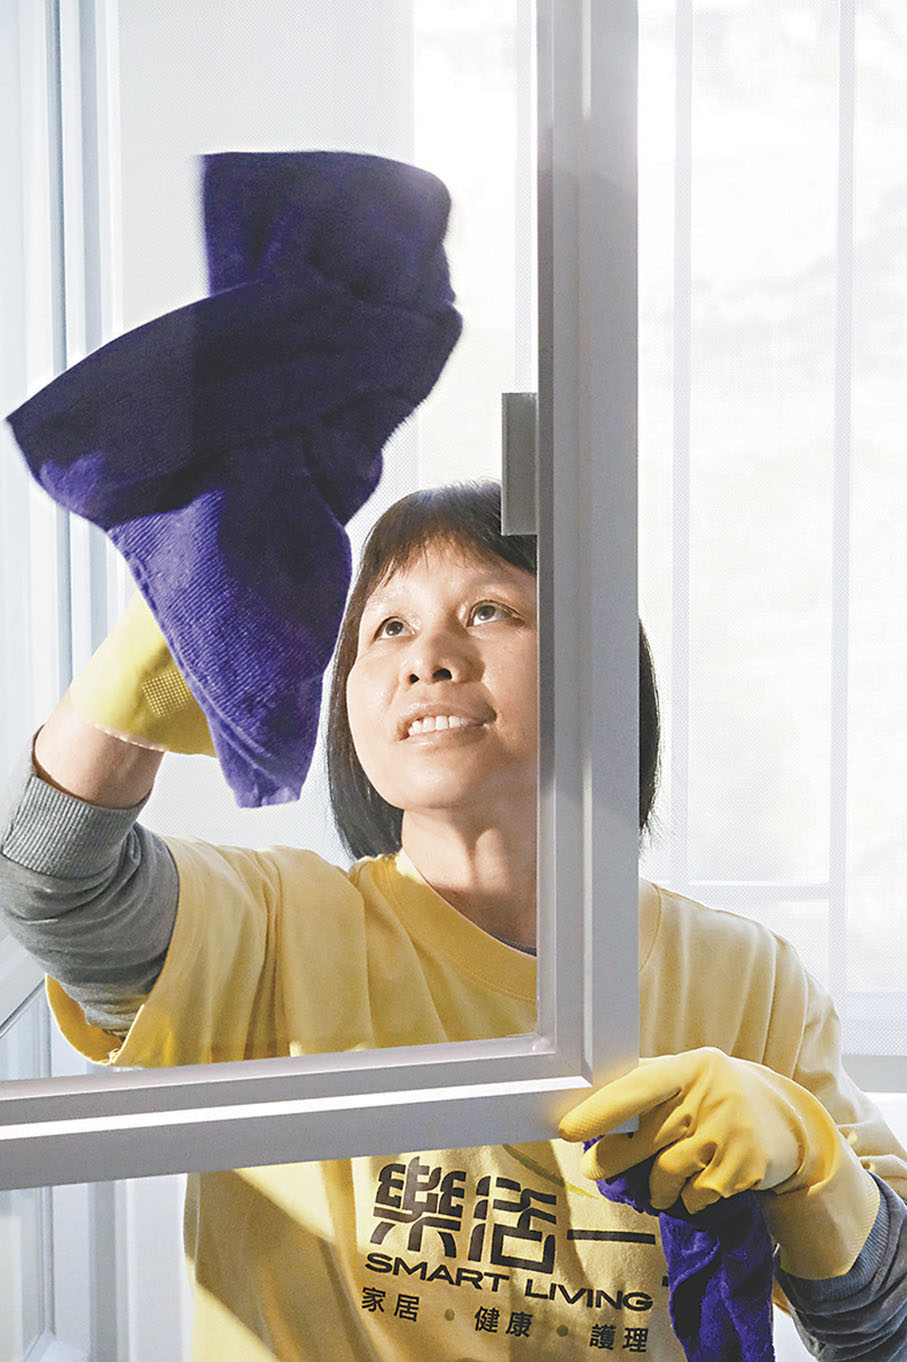 ◆家居清潔經驗豐富的陳杏珍說，抹窗需注重安全，頭和身須留在室內。 香港文匯報記者涂穴 攝